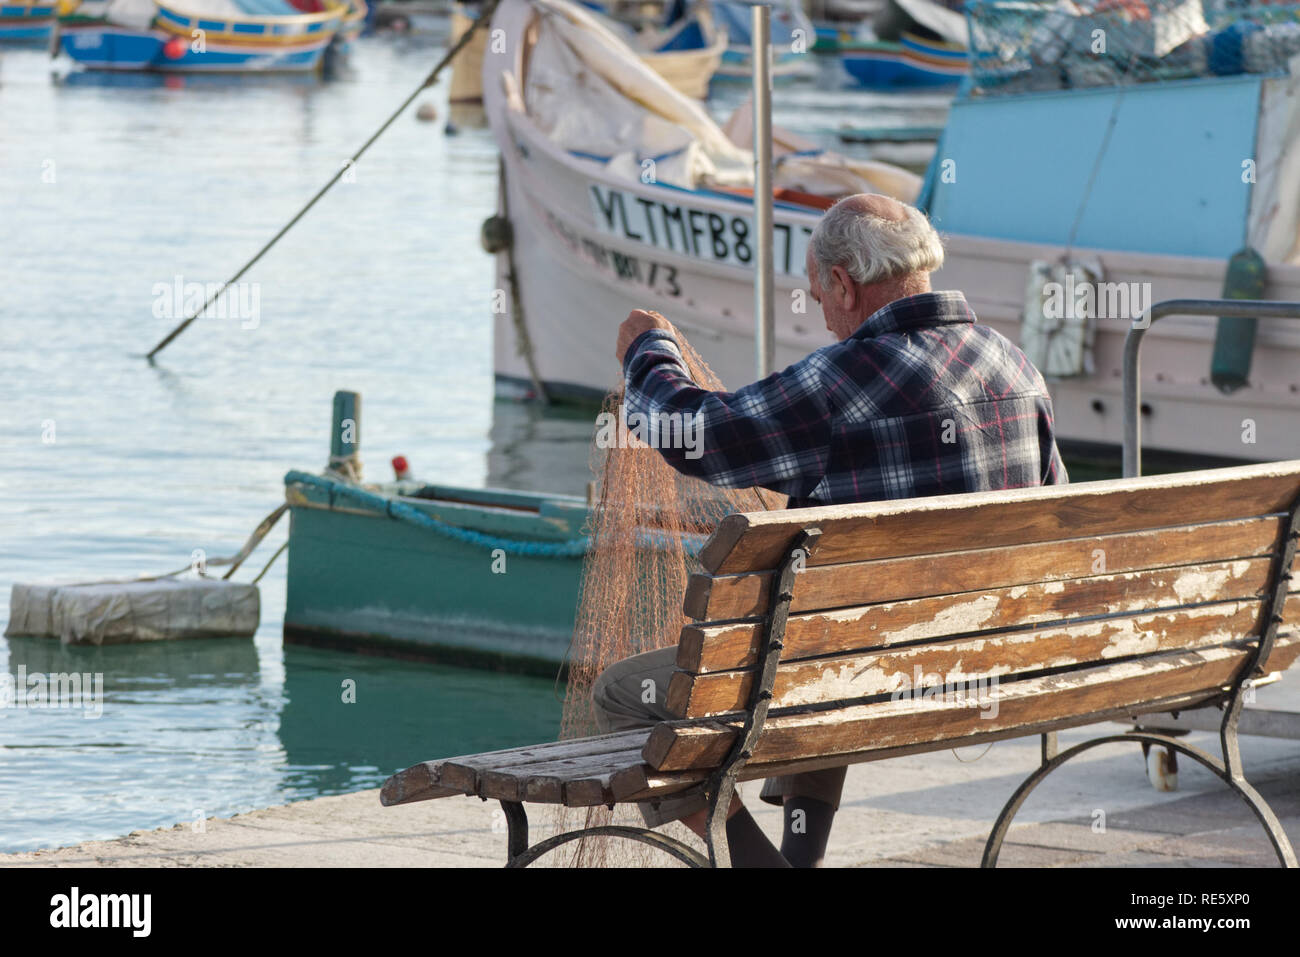 Marsaxlokk/Malta - 30. November 2018: Ein alter Fischer ist die Reparatur seiner Fischernetze auf einer Bank am Hafen. Stockfoto